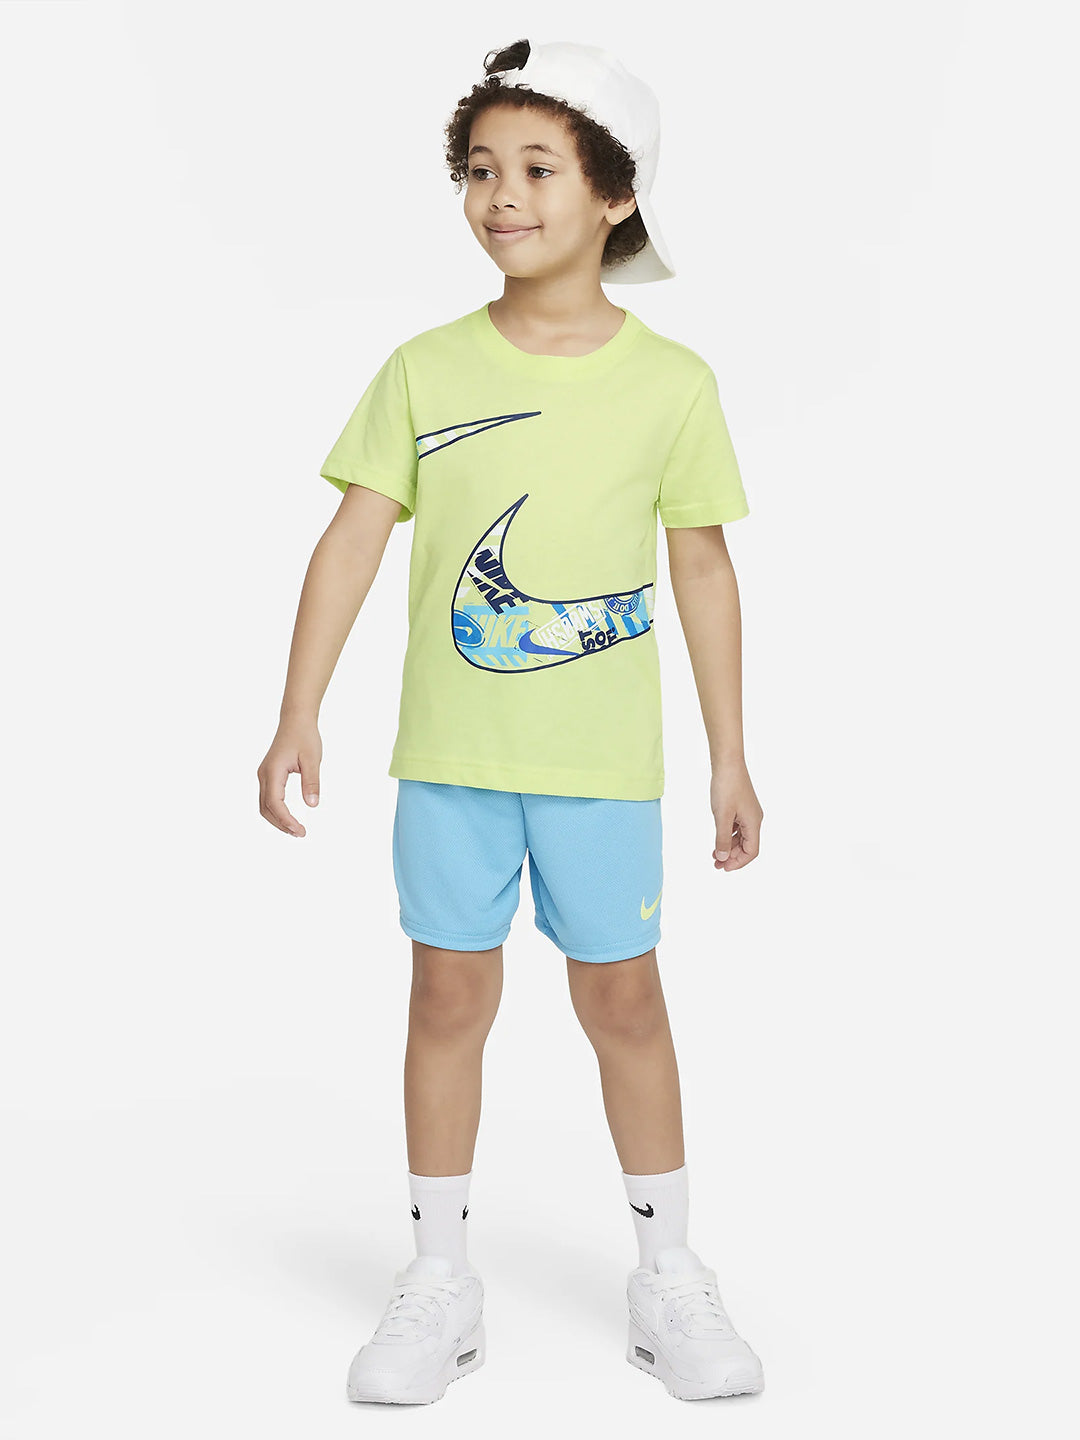 Nike kids coordinato t shirt e pantaloncini